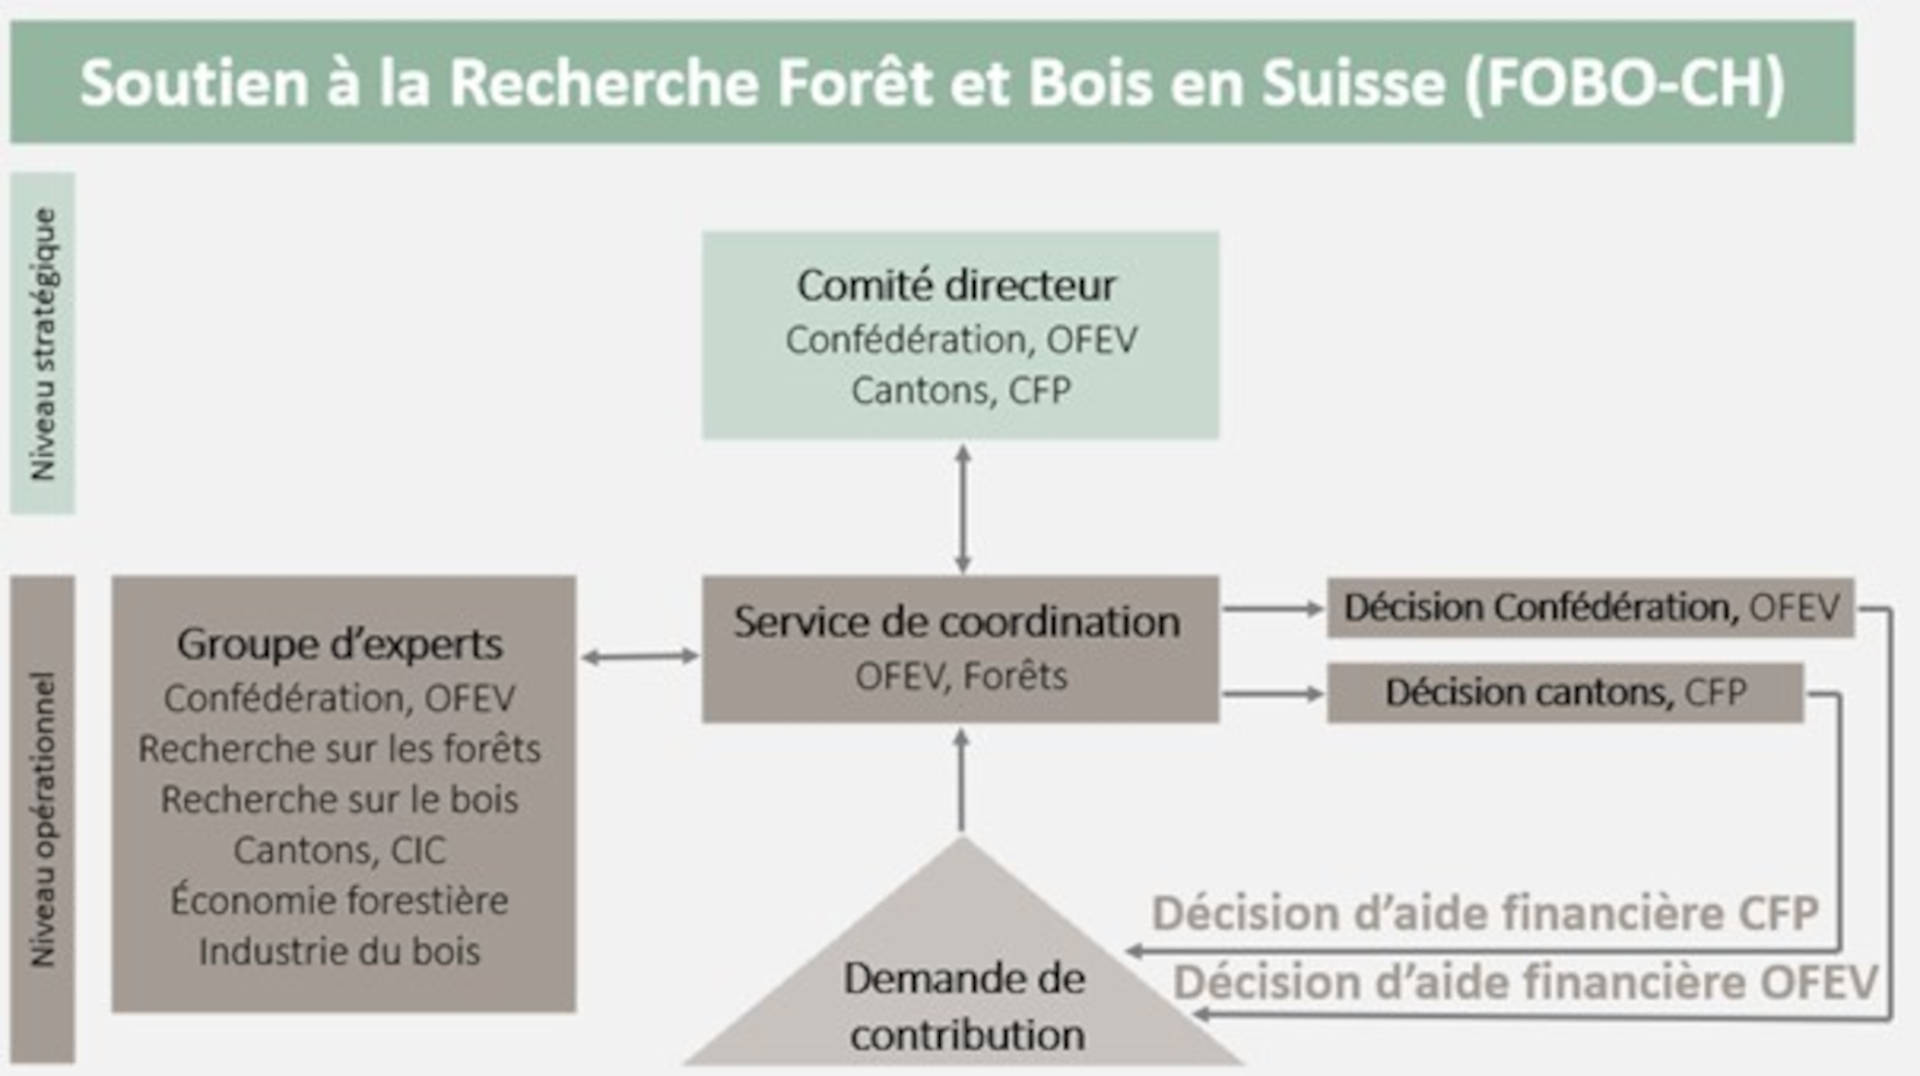 Soutien à la Recherche Forêt et Bois en Suisse (FOBO-CH)